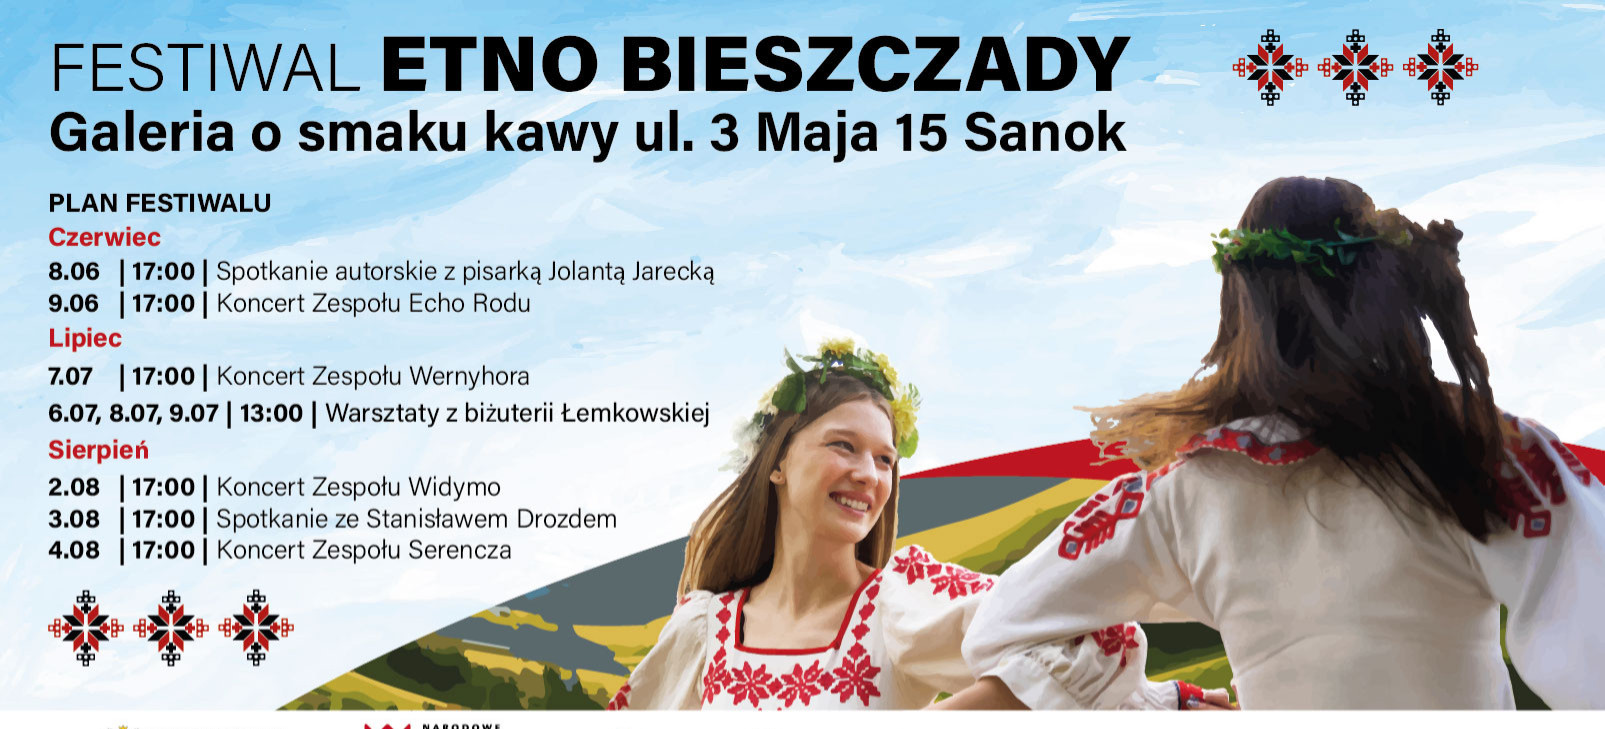 Festiwal Etno Bieszczady: koncerty, warsztaty i spotkania autorskie